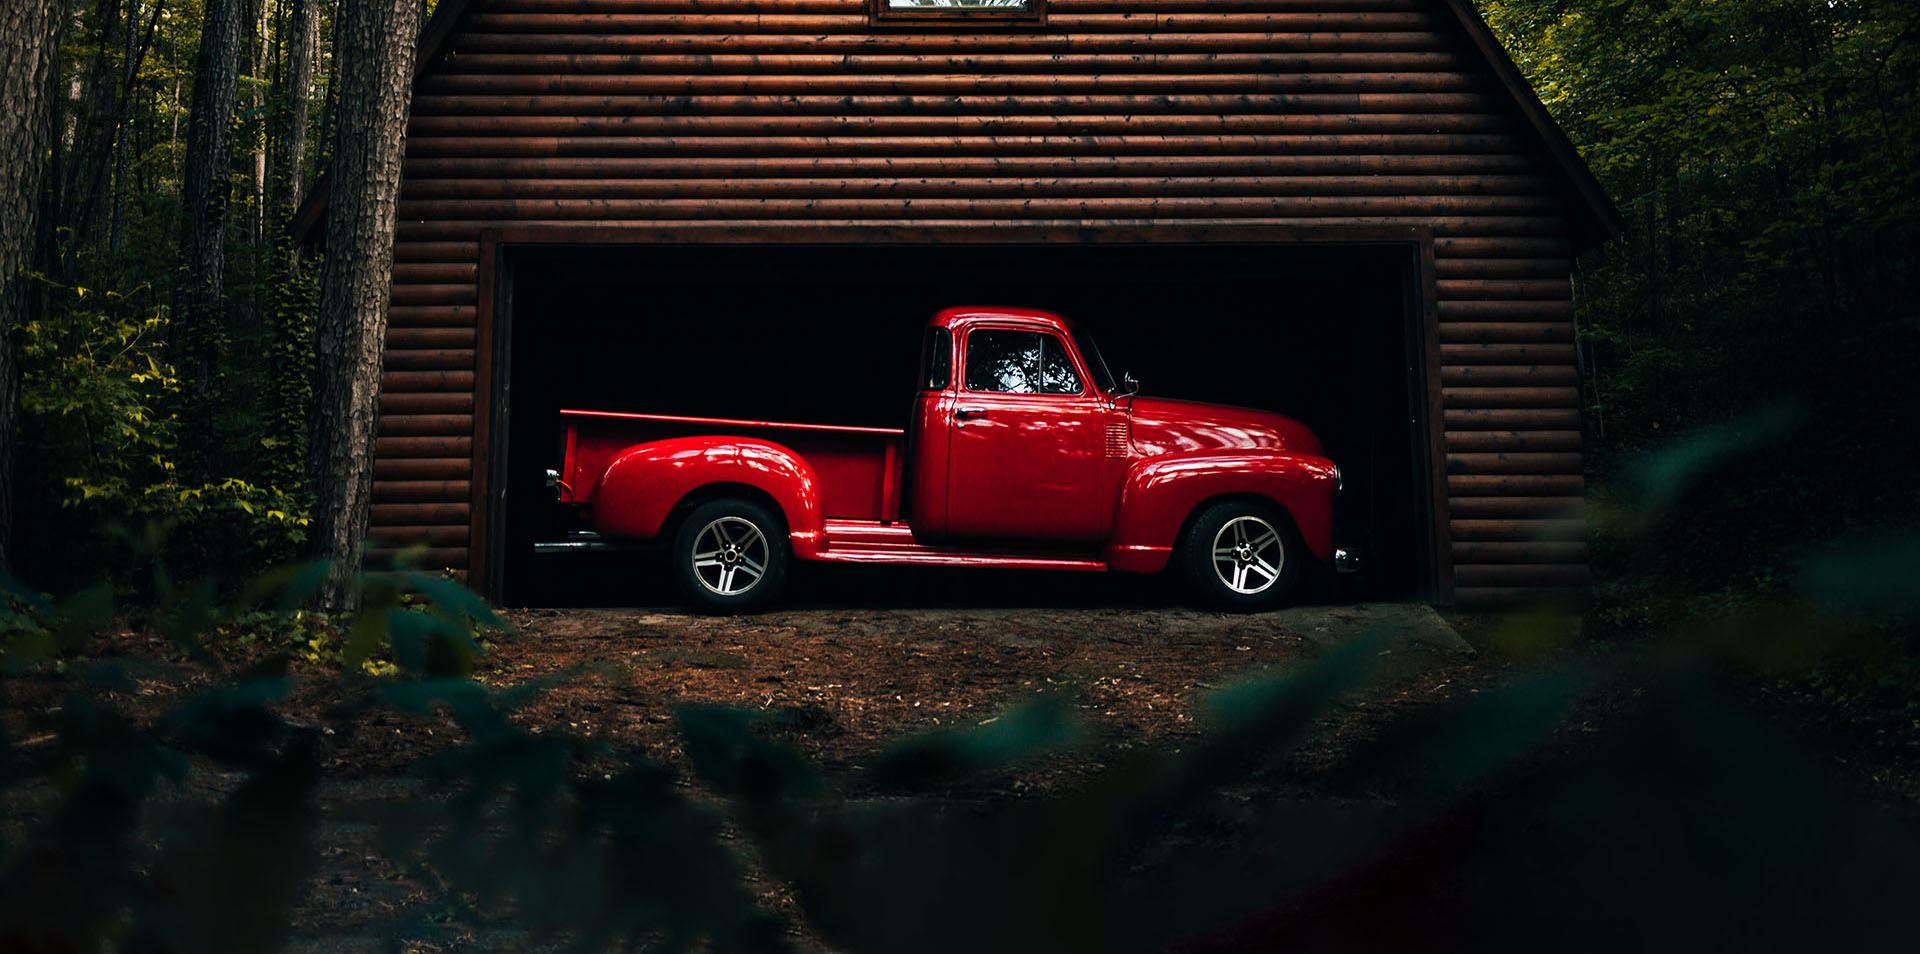 red 60's model pickup in a barn